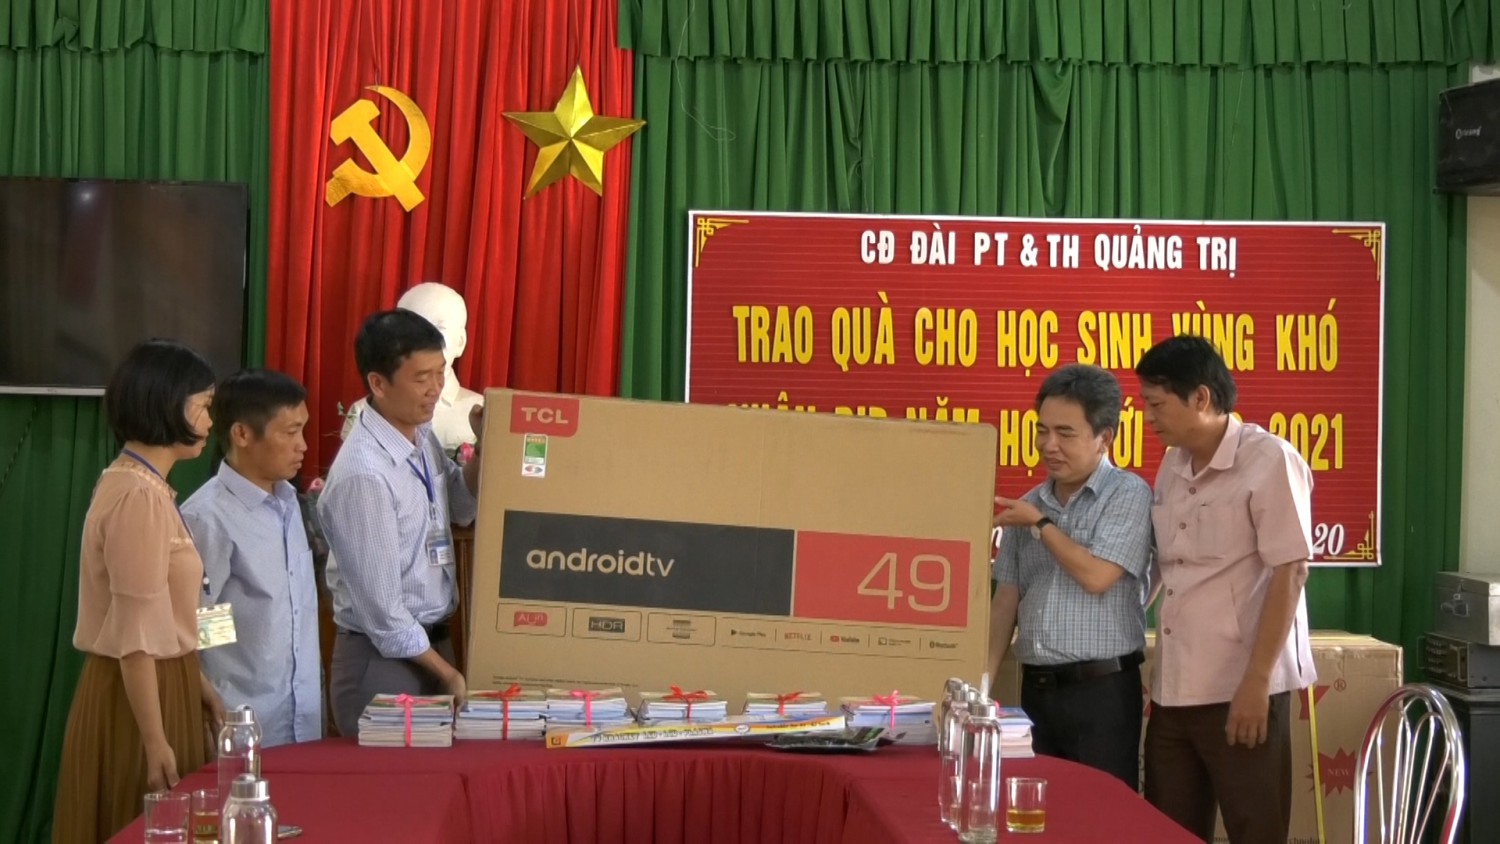 Các phần quà được trao cho nhà trường và học sinh thuộc xã Hướng Việt, Hướng Hóa